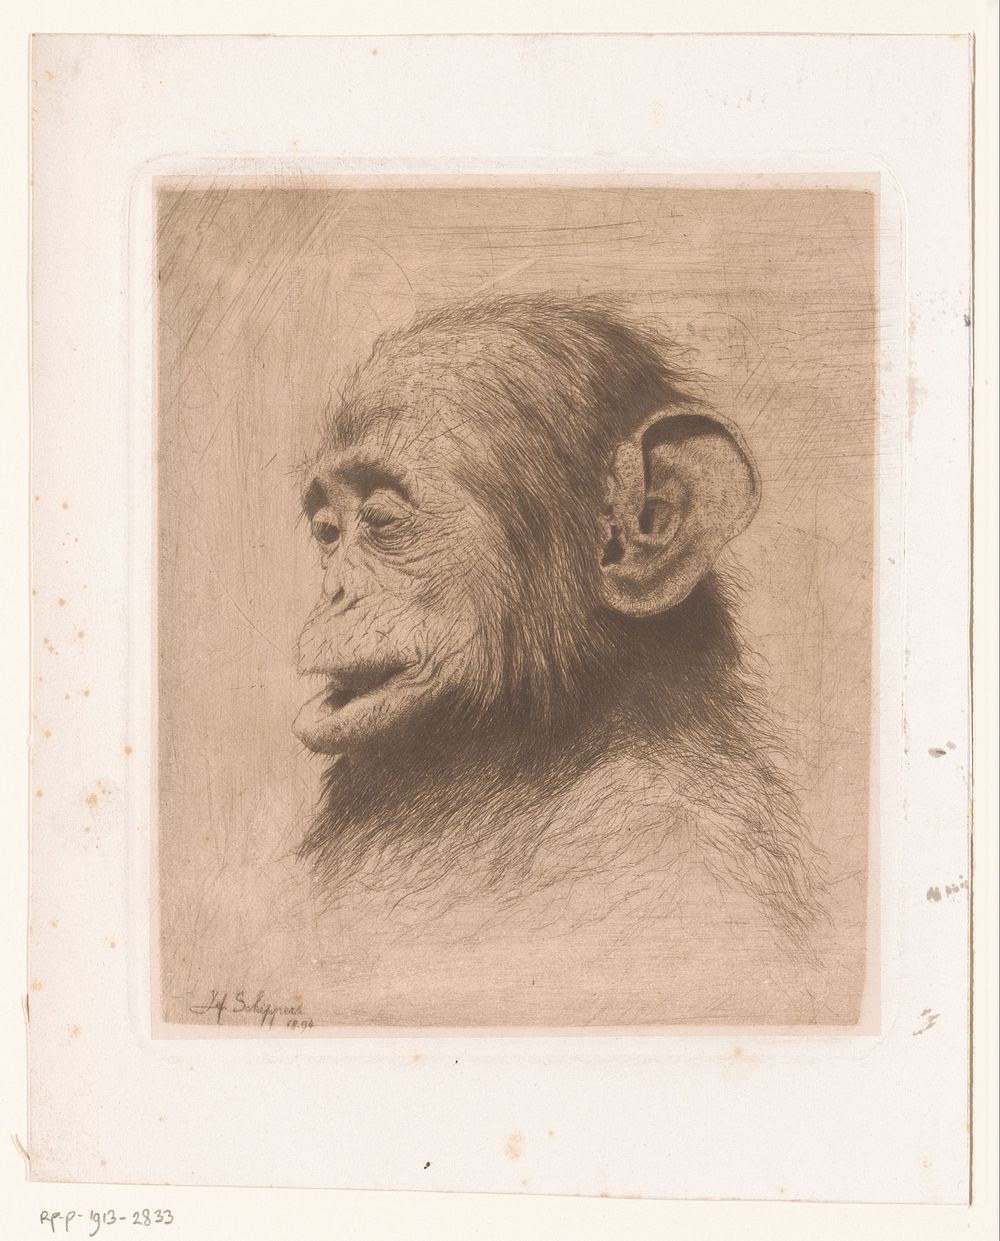 Kop van een jonge chimpansee (1894) by Joseph Schippers